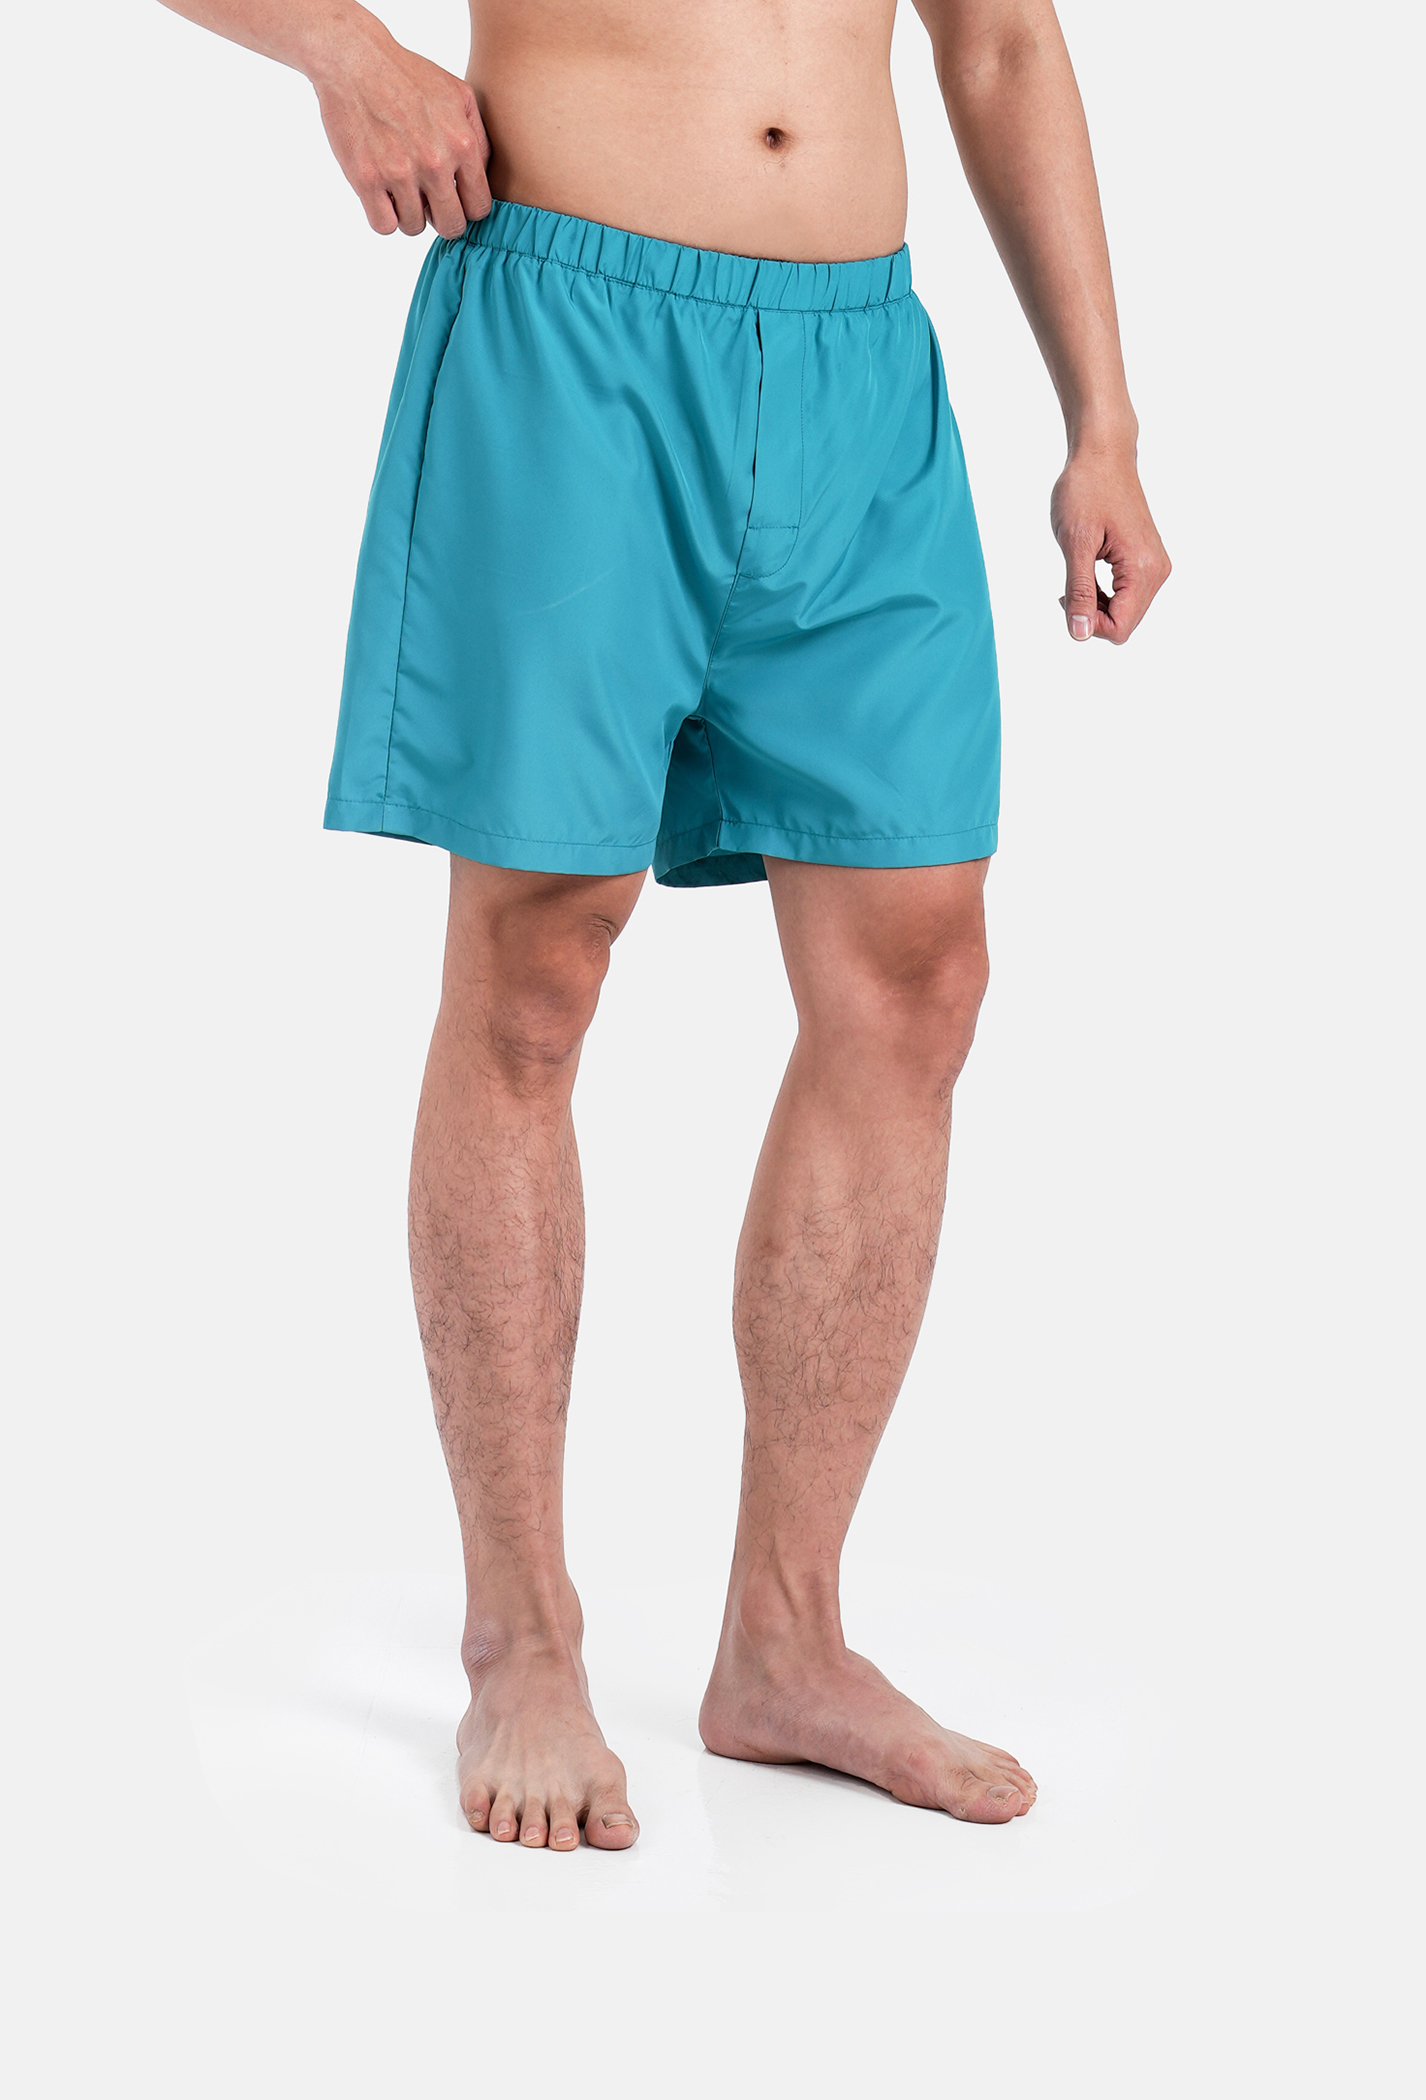 Săn deal - Quần Shorts mặc nhà Coolmate Basics Xanh ngọc 2